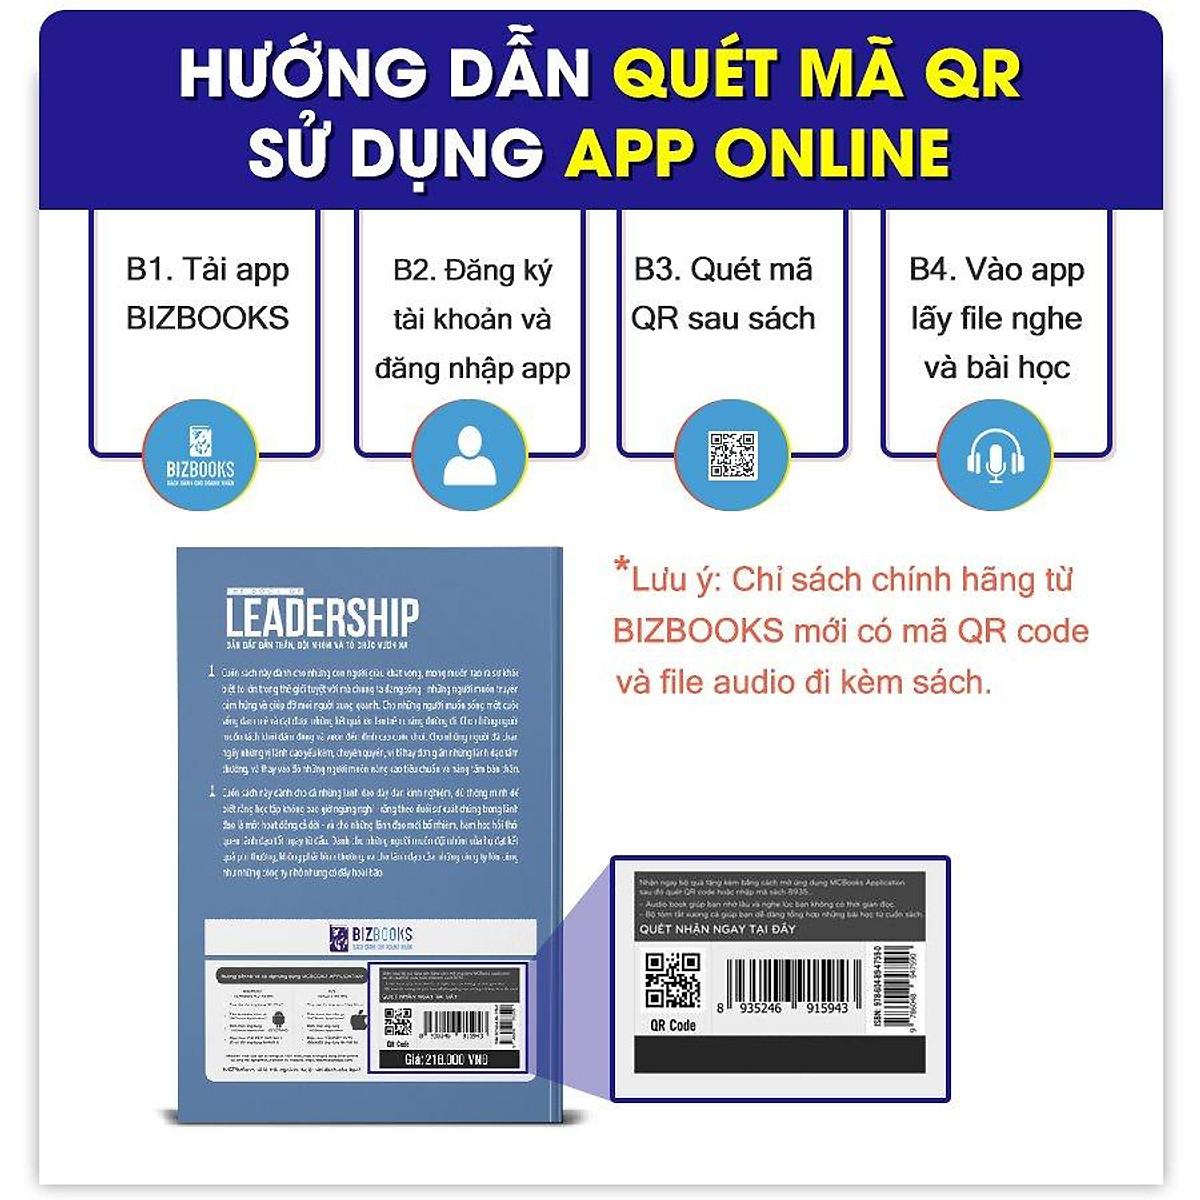 BIZBOOKS - Sách Content Marketing 4.0: Nội Dung Hay, Bán Bay Kho Hàng - MinhAnBooks